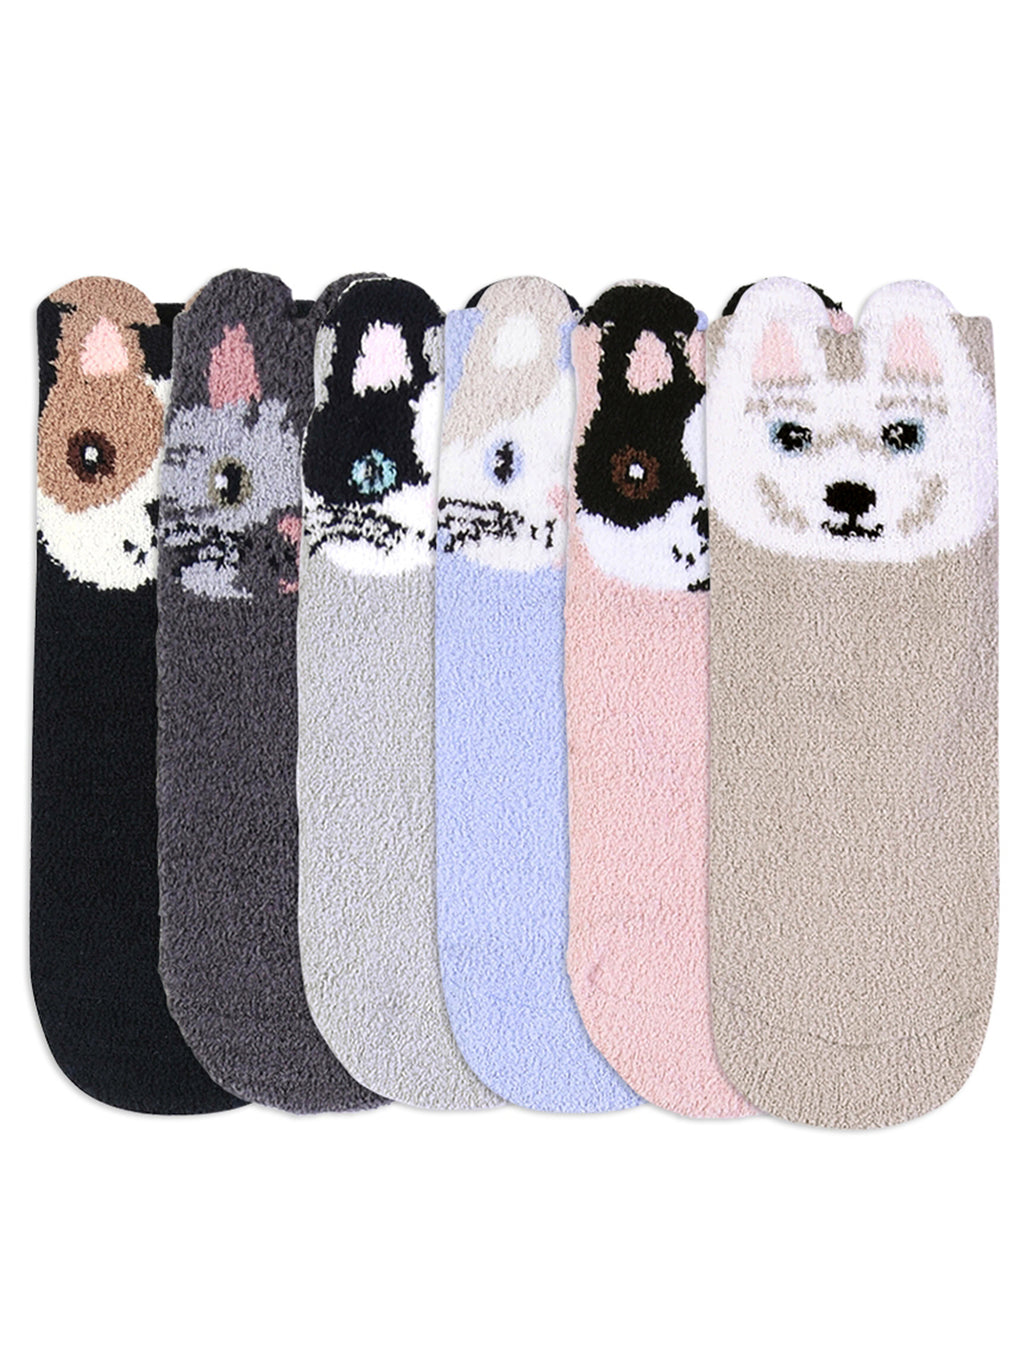 Adorable 6 Pack Animal Face Non-Slip Slipper Socks